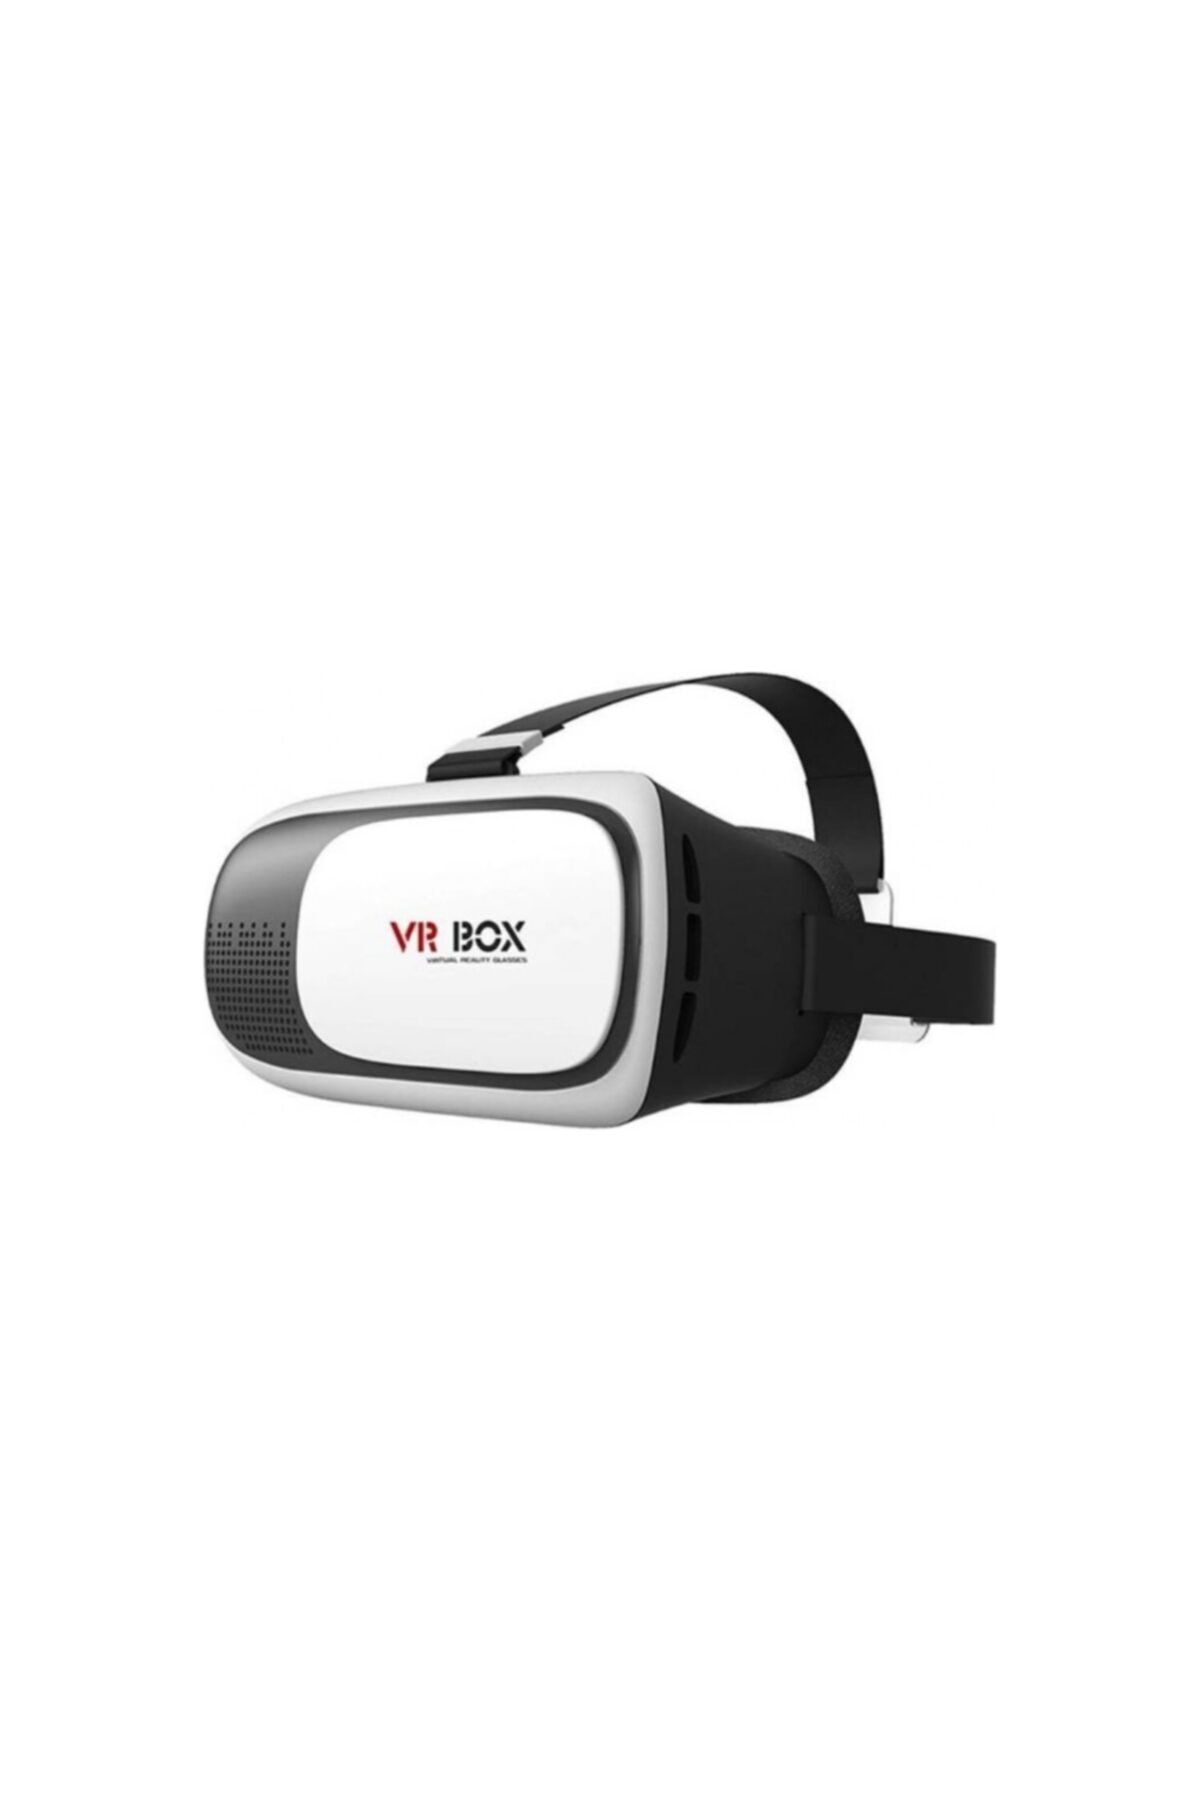 Vr Box Vr-box 3d Sanal Gerçeklik Gözlüğü Akıllı Gözlük Vrbox